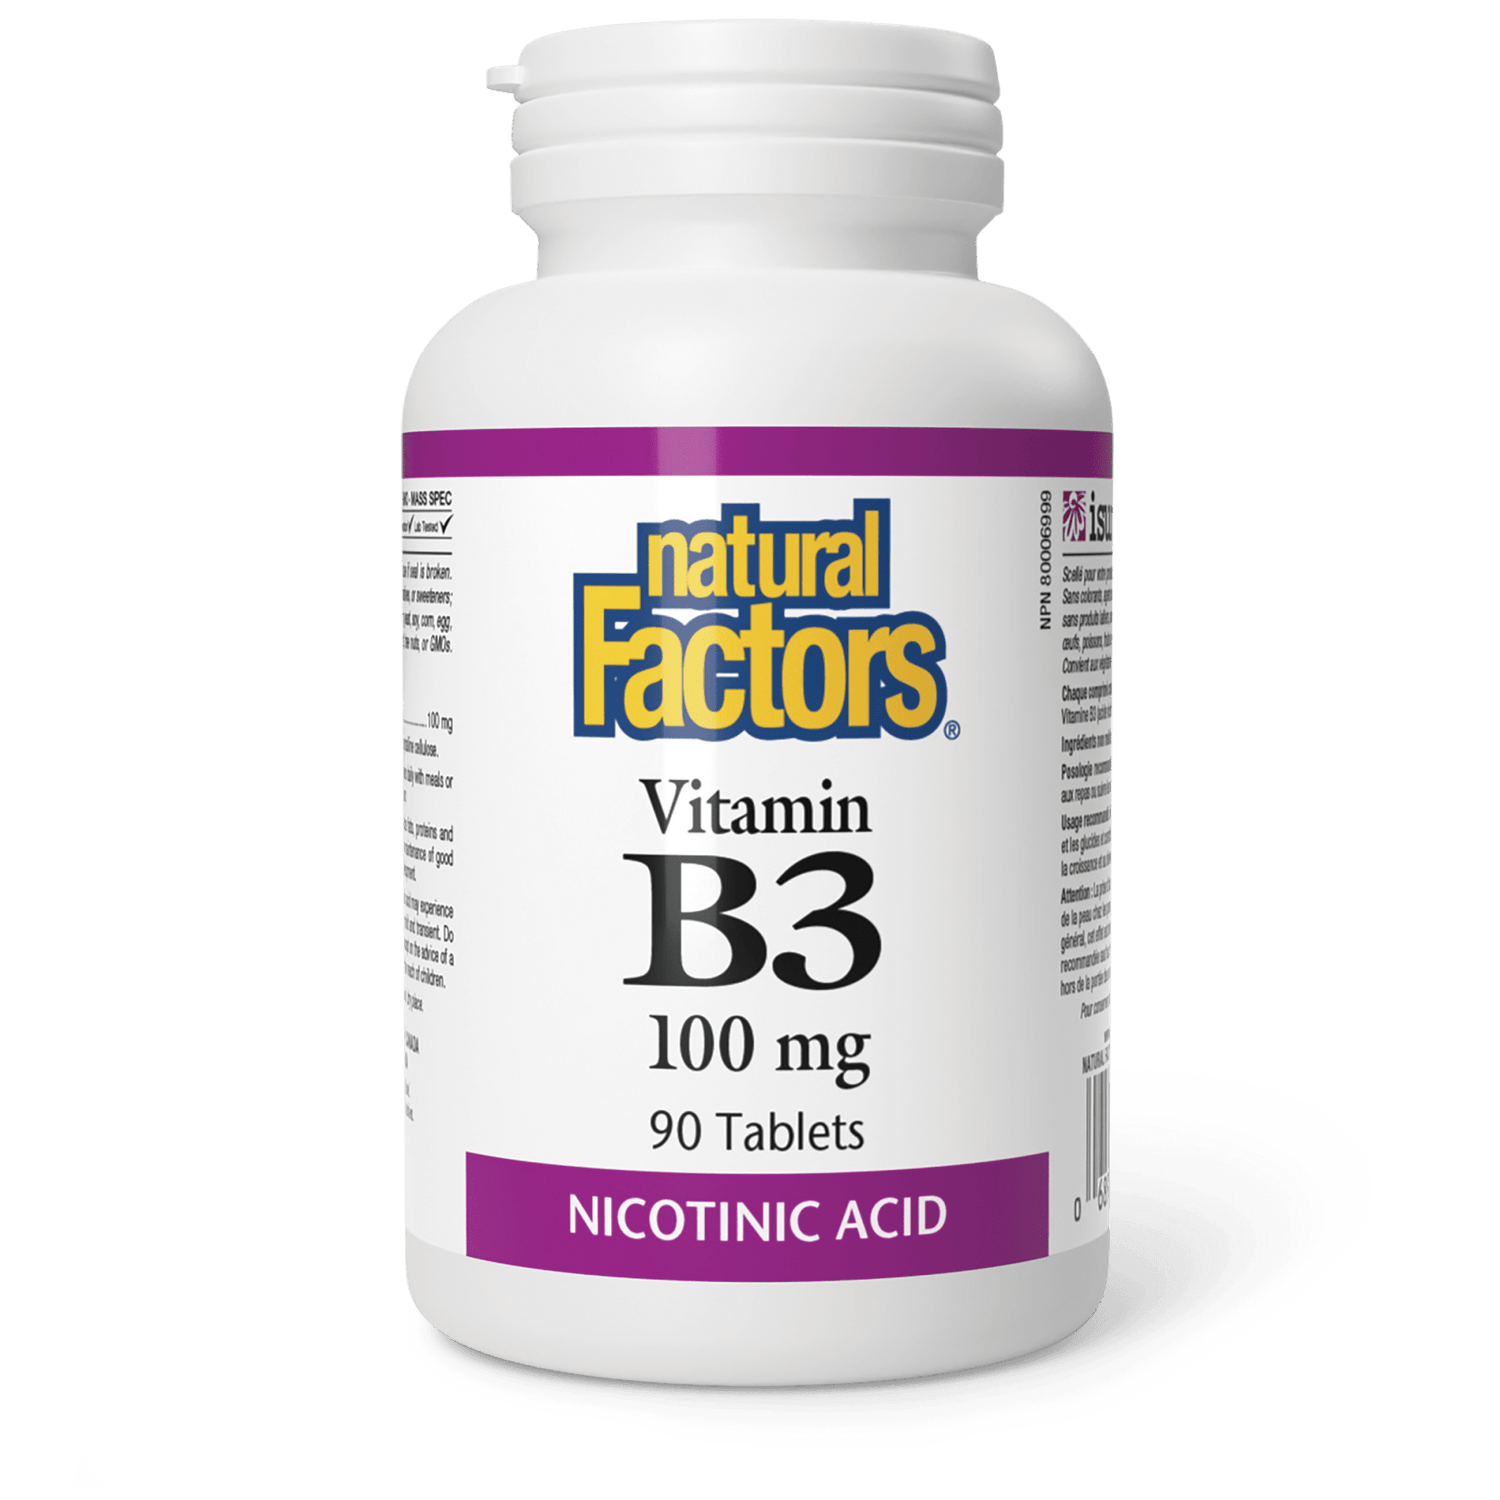 Vitamin B3 100 mg, Natural Factors|v|image|1220